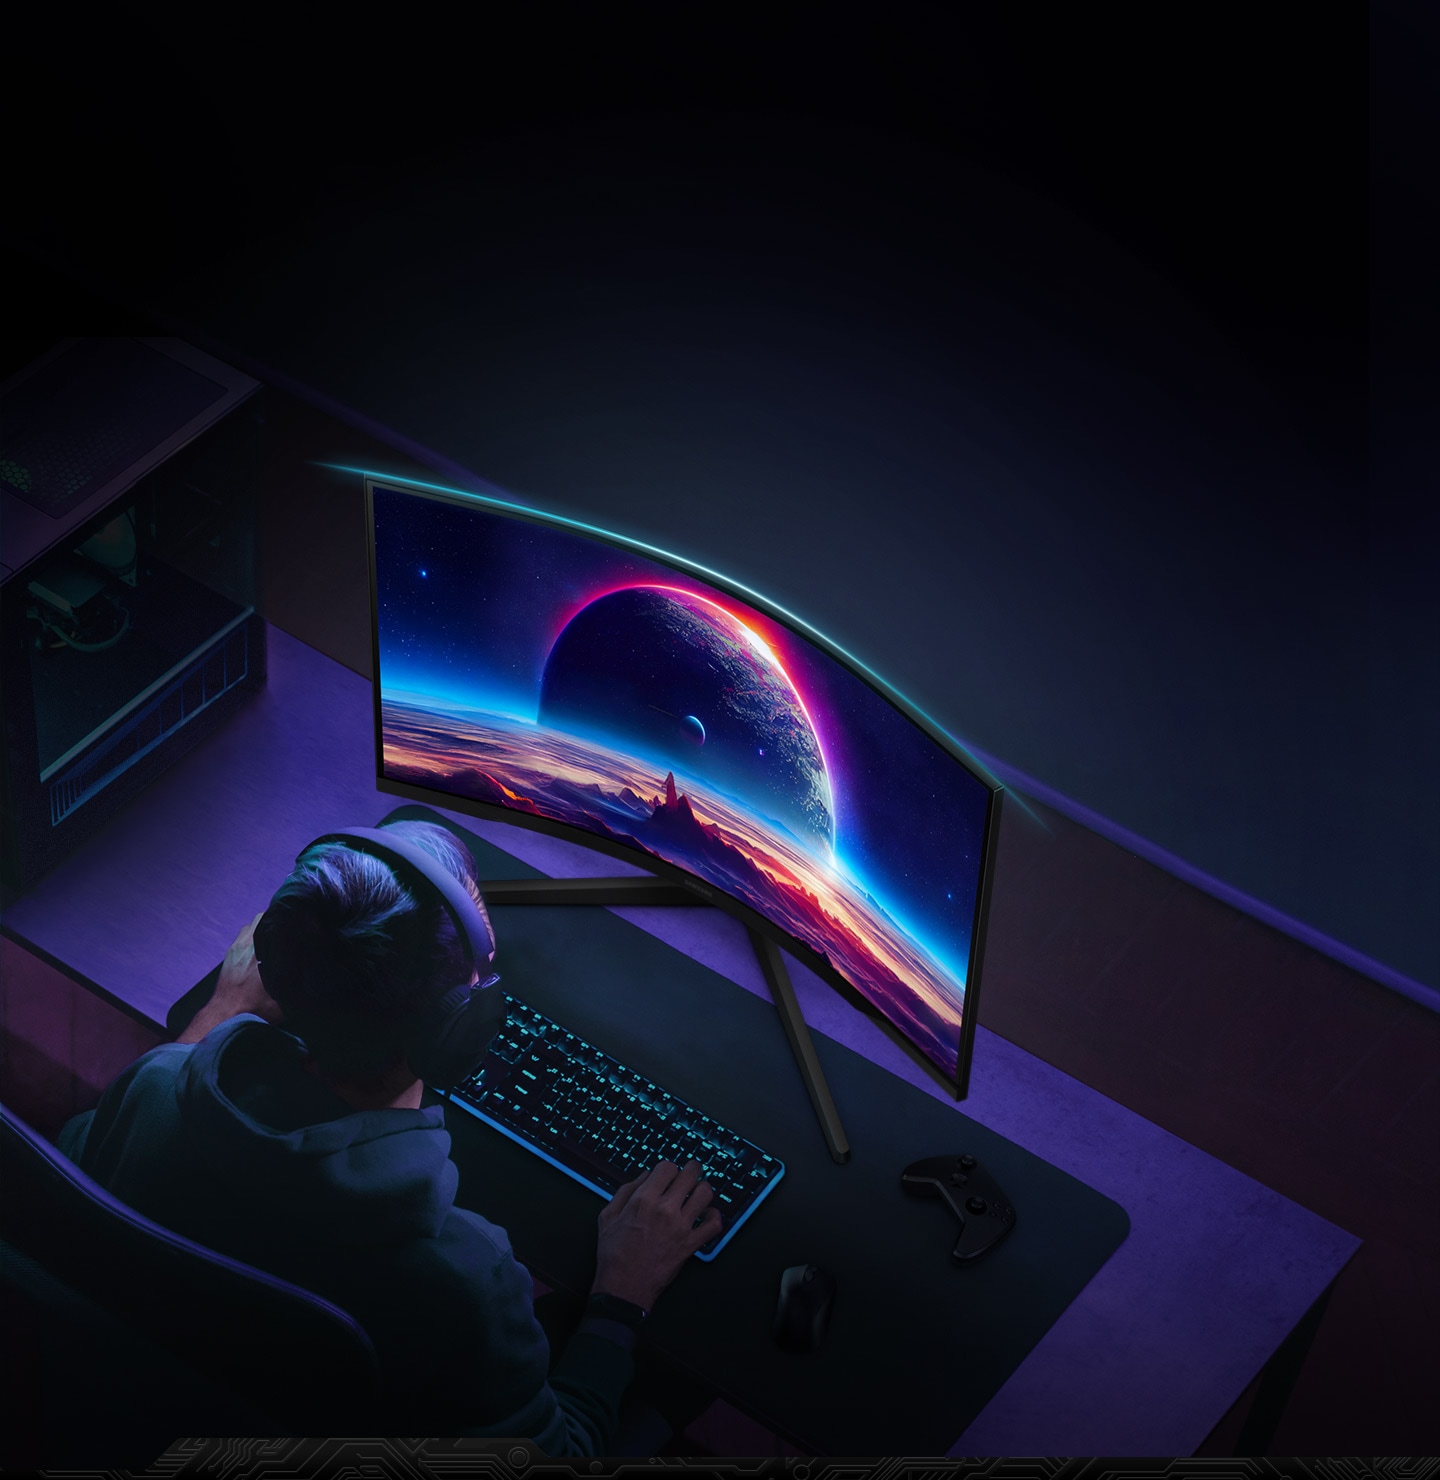 Một người đàn ông ngồi trước màn hình Odyssey G5 trong ánh sáng mờ, vừa sử dụng chuột và bàn phím vừa đeo tai nghe. Chiếc đèn xanh lam ở phía trên của khung viền làm nổi bật độ cong của màn hình.